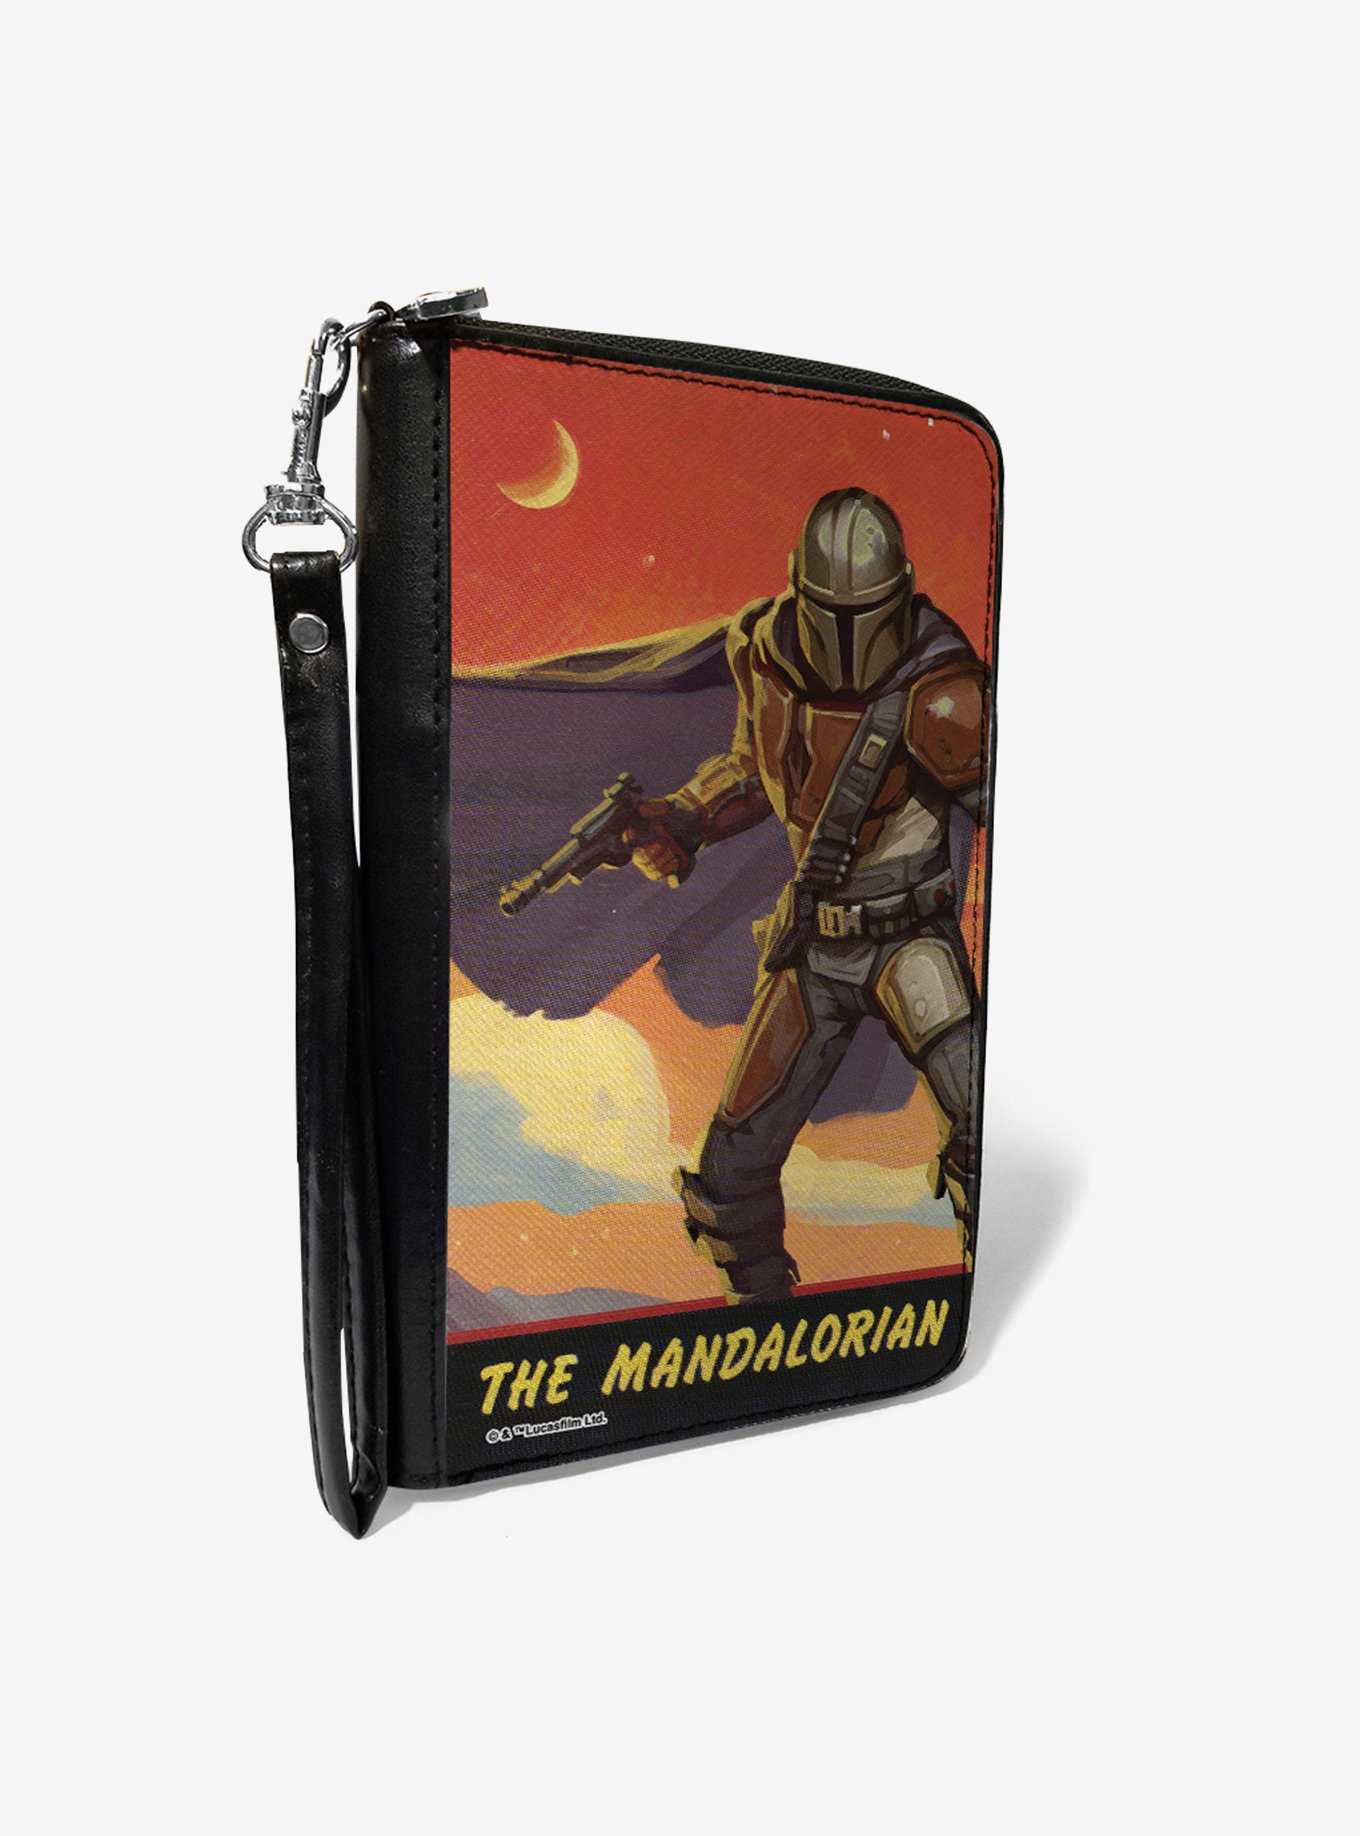 Star Wars The Mandalorian Blaster Pose Women's PU Zip Around Wallet, , hi-res